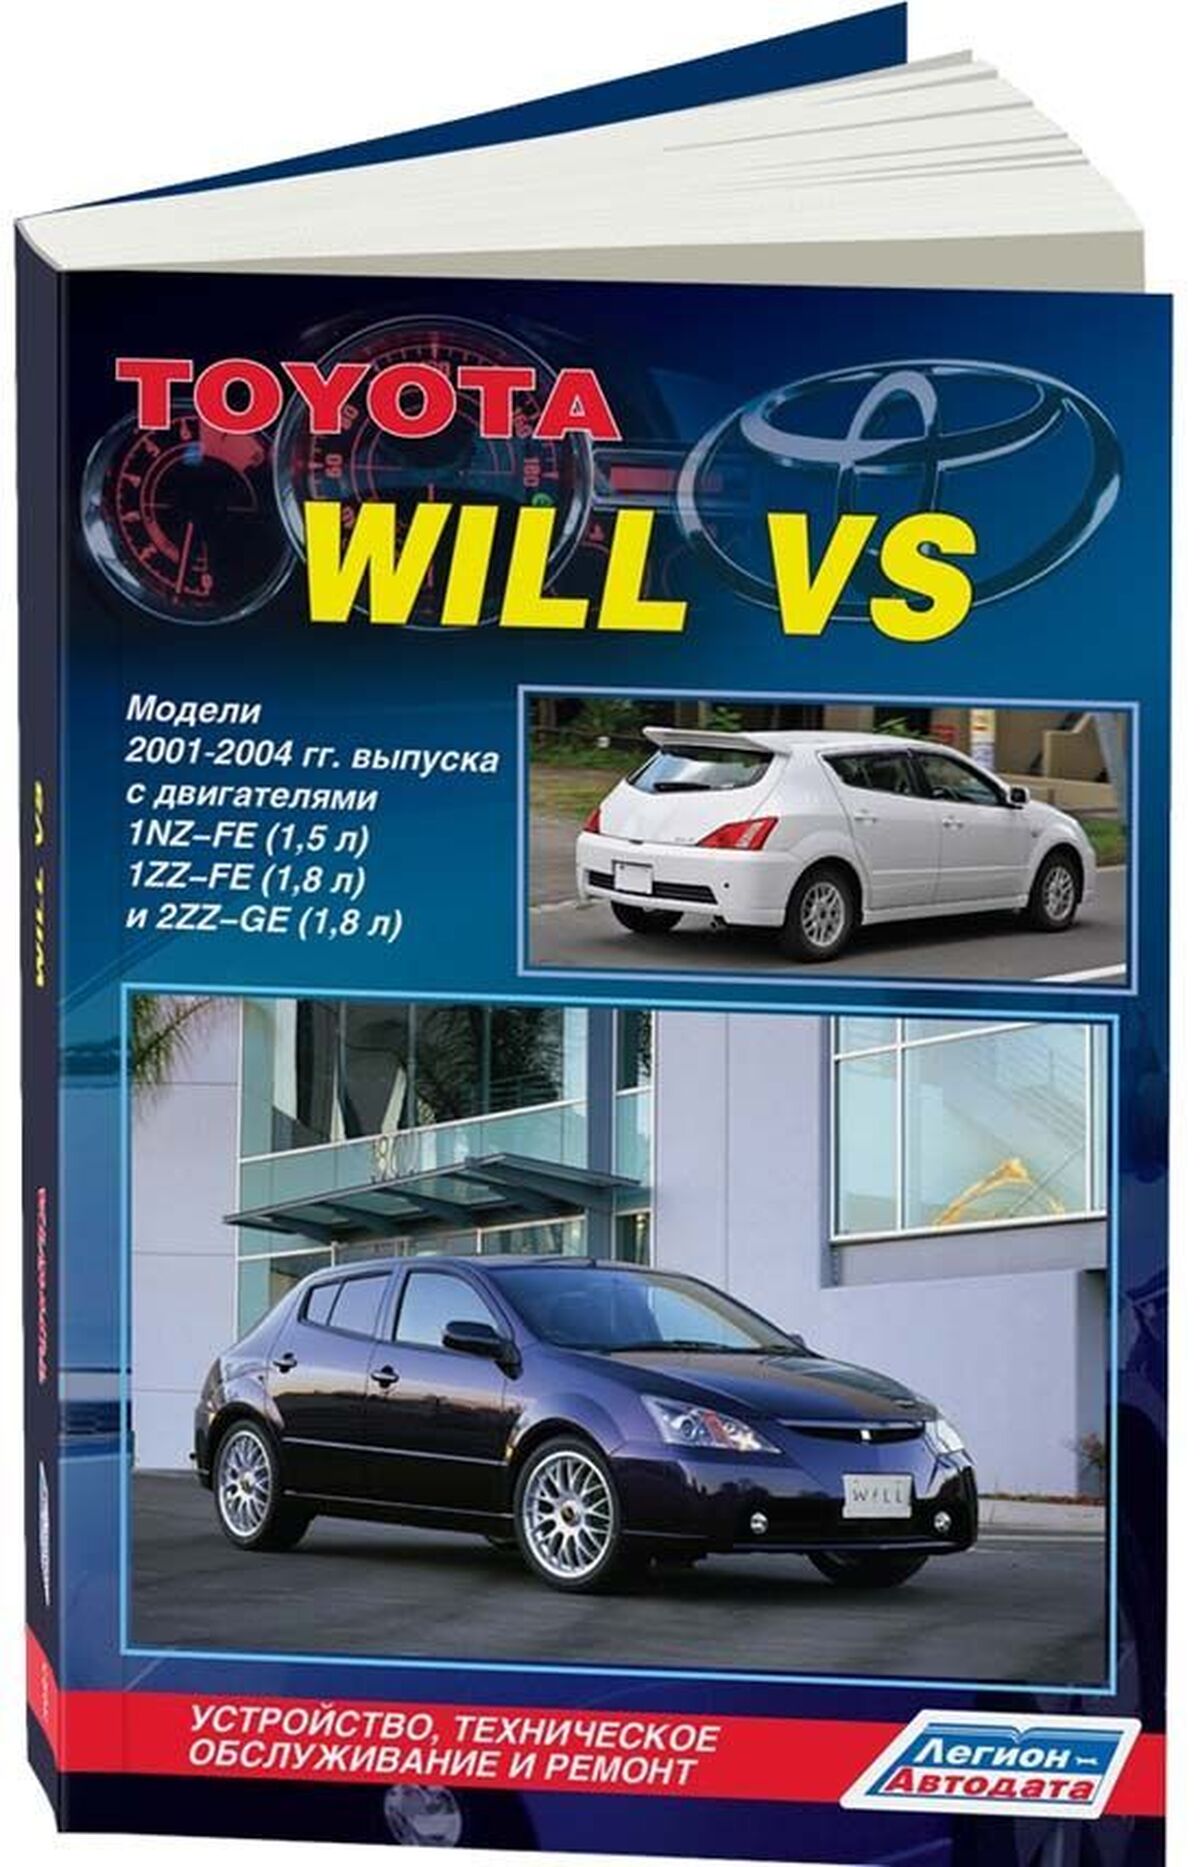 Книга: TOYOTA WILL VS (б) 2001-2004 г.в., рем., экспл., то | Легион-Aвтодата